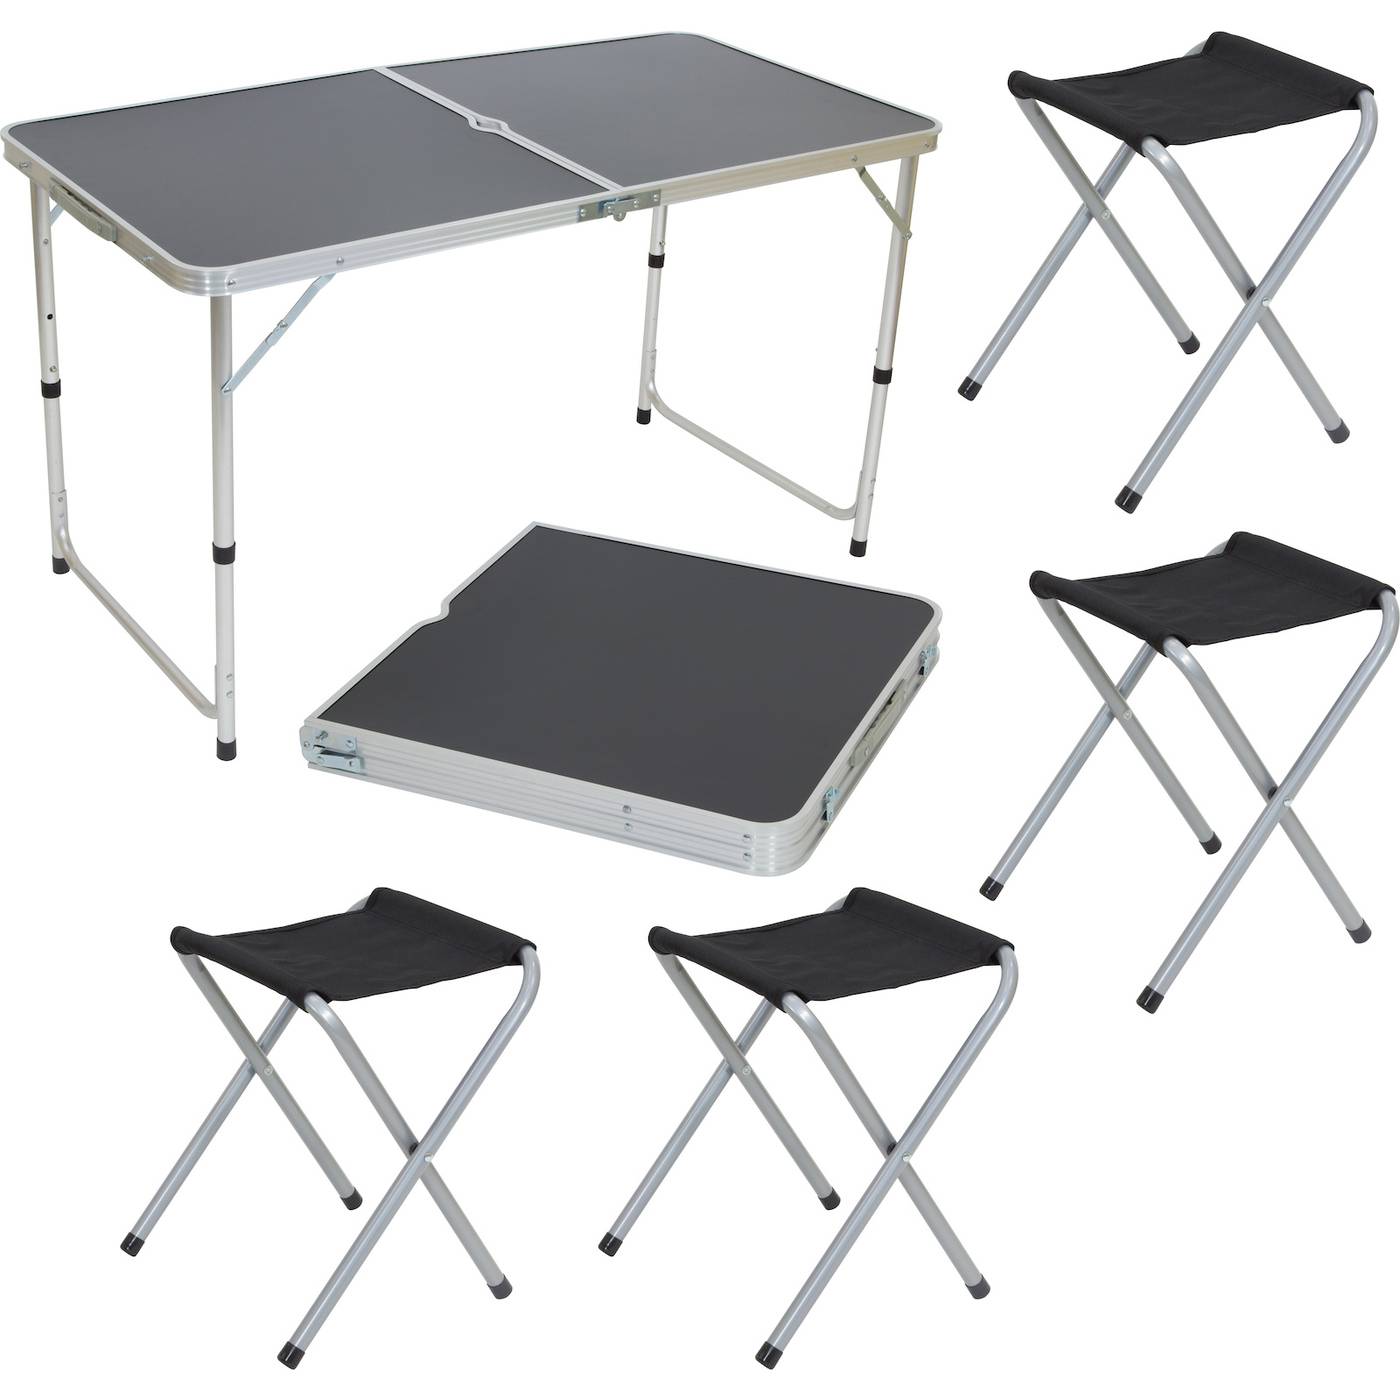 Наборы столов для пикника. Экос cho-150-e комплект "пикник" (стол и 4 стула ) черный (992992). Набор мебели Atemi ATS-400. Стол складной GH 404 Ecos. Комплект Ecos пикник cho-150-e.